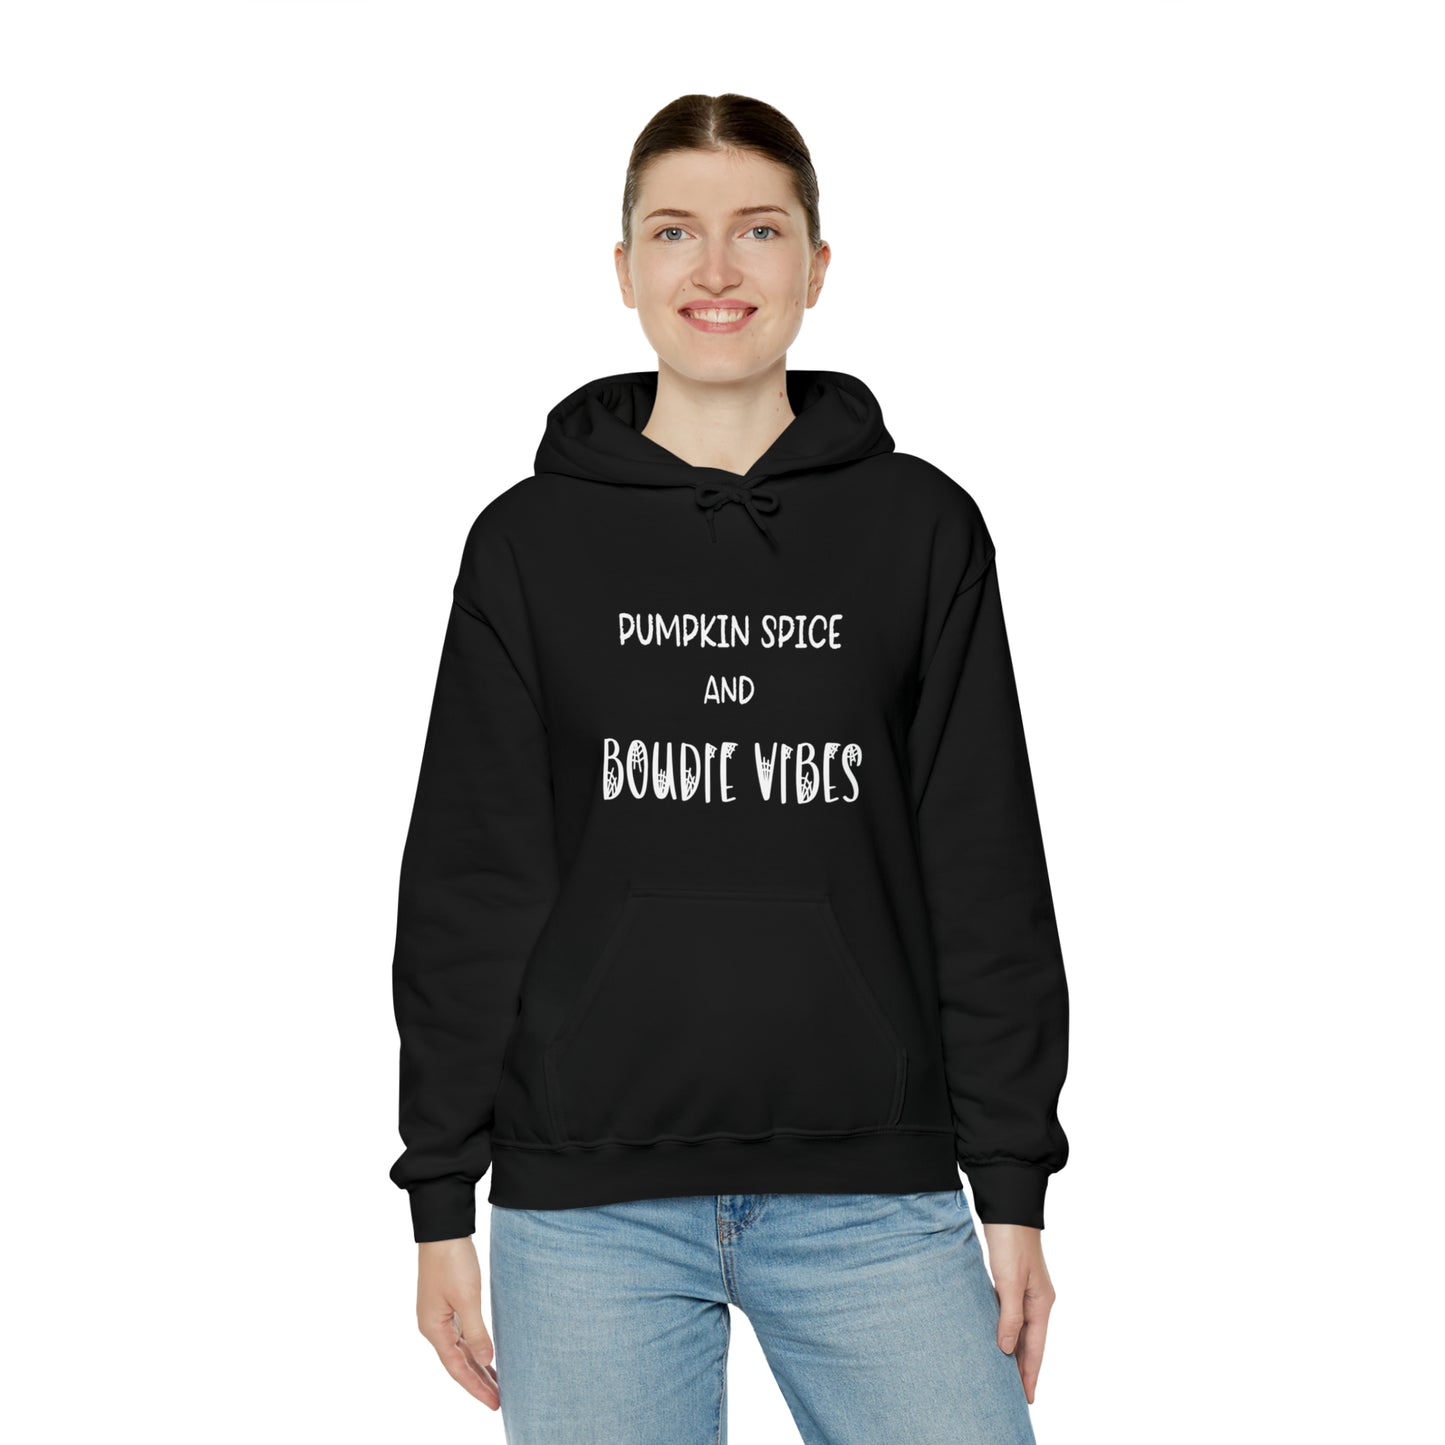 Halloween - Customizable Hooded Sweatshirt ! Be like me! Wear your brand in public!